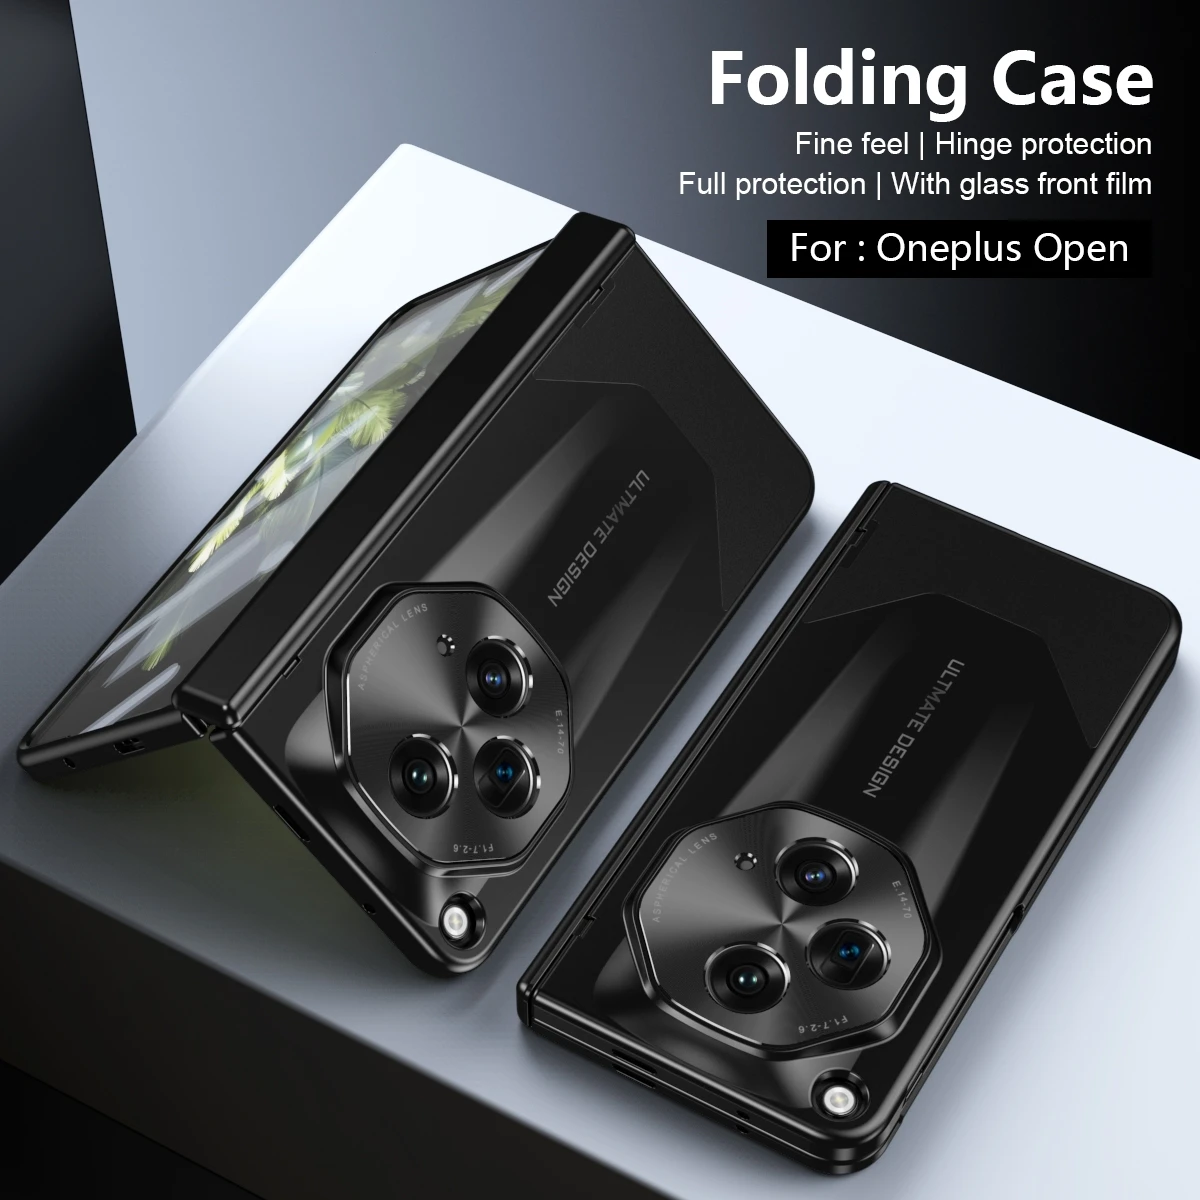 

Для Oneplus открытое внешнее покрытие Жесткий ПК шарнир полная защита противоударные Чехлы для 1 + Открытый Чехол со стеклянной пленкой